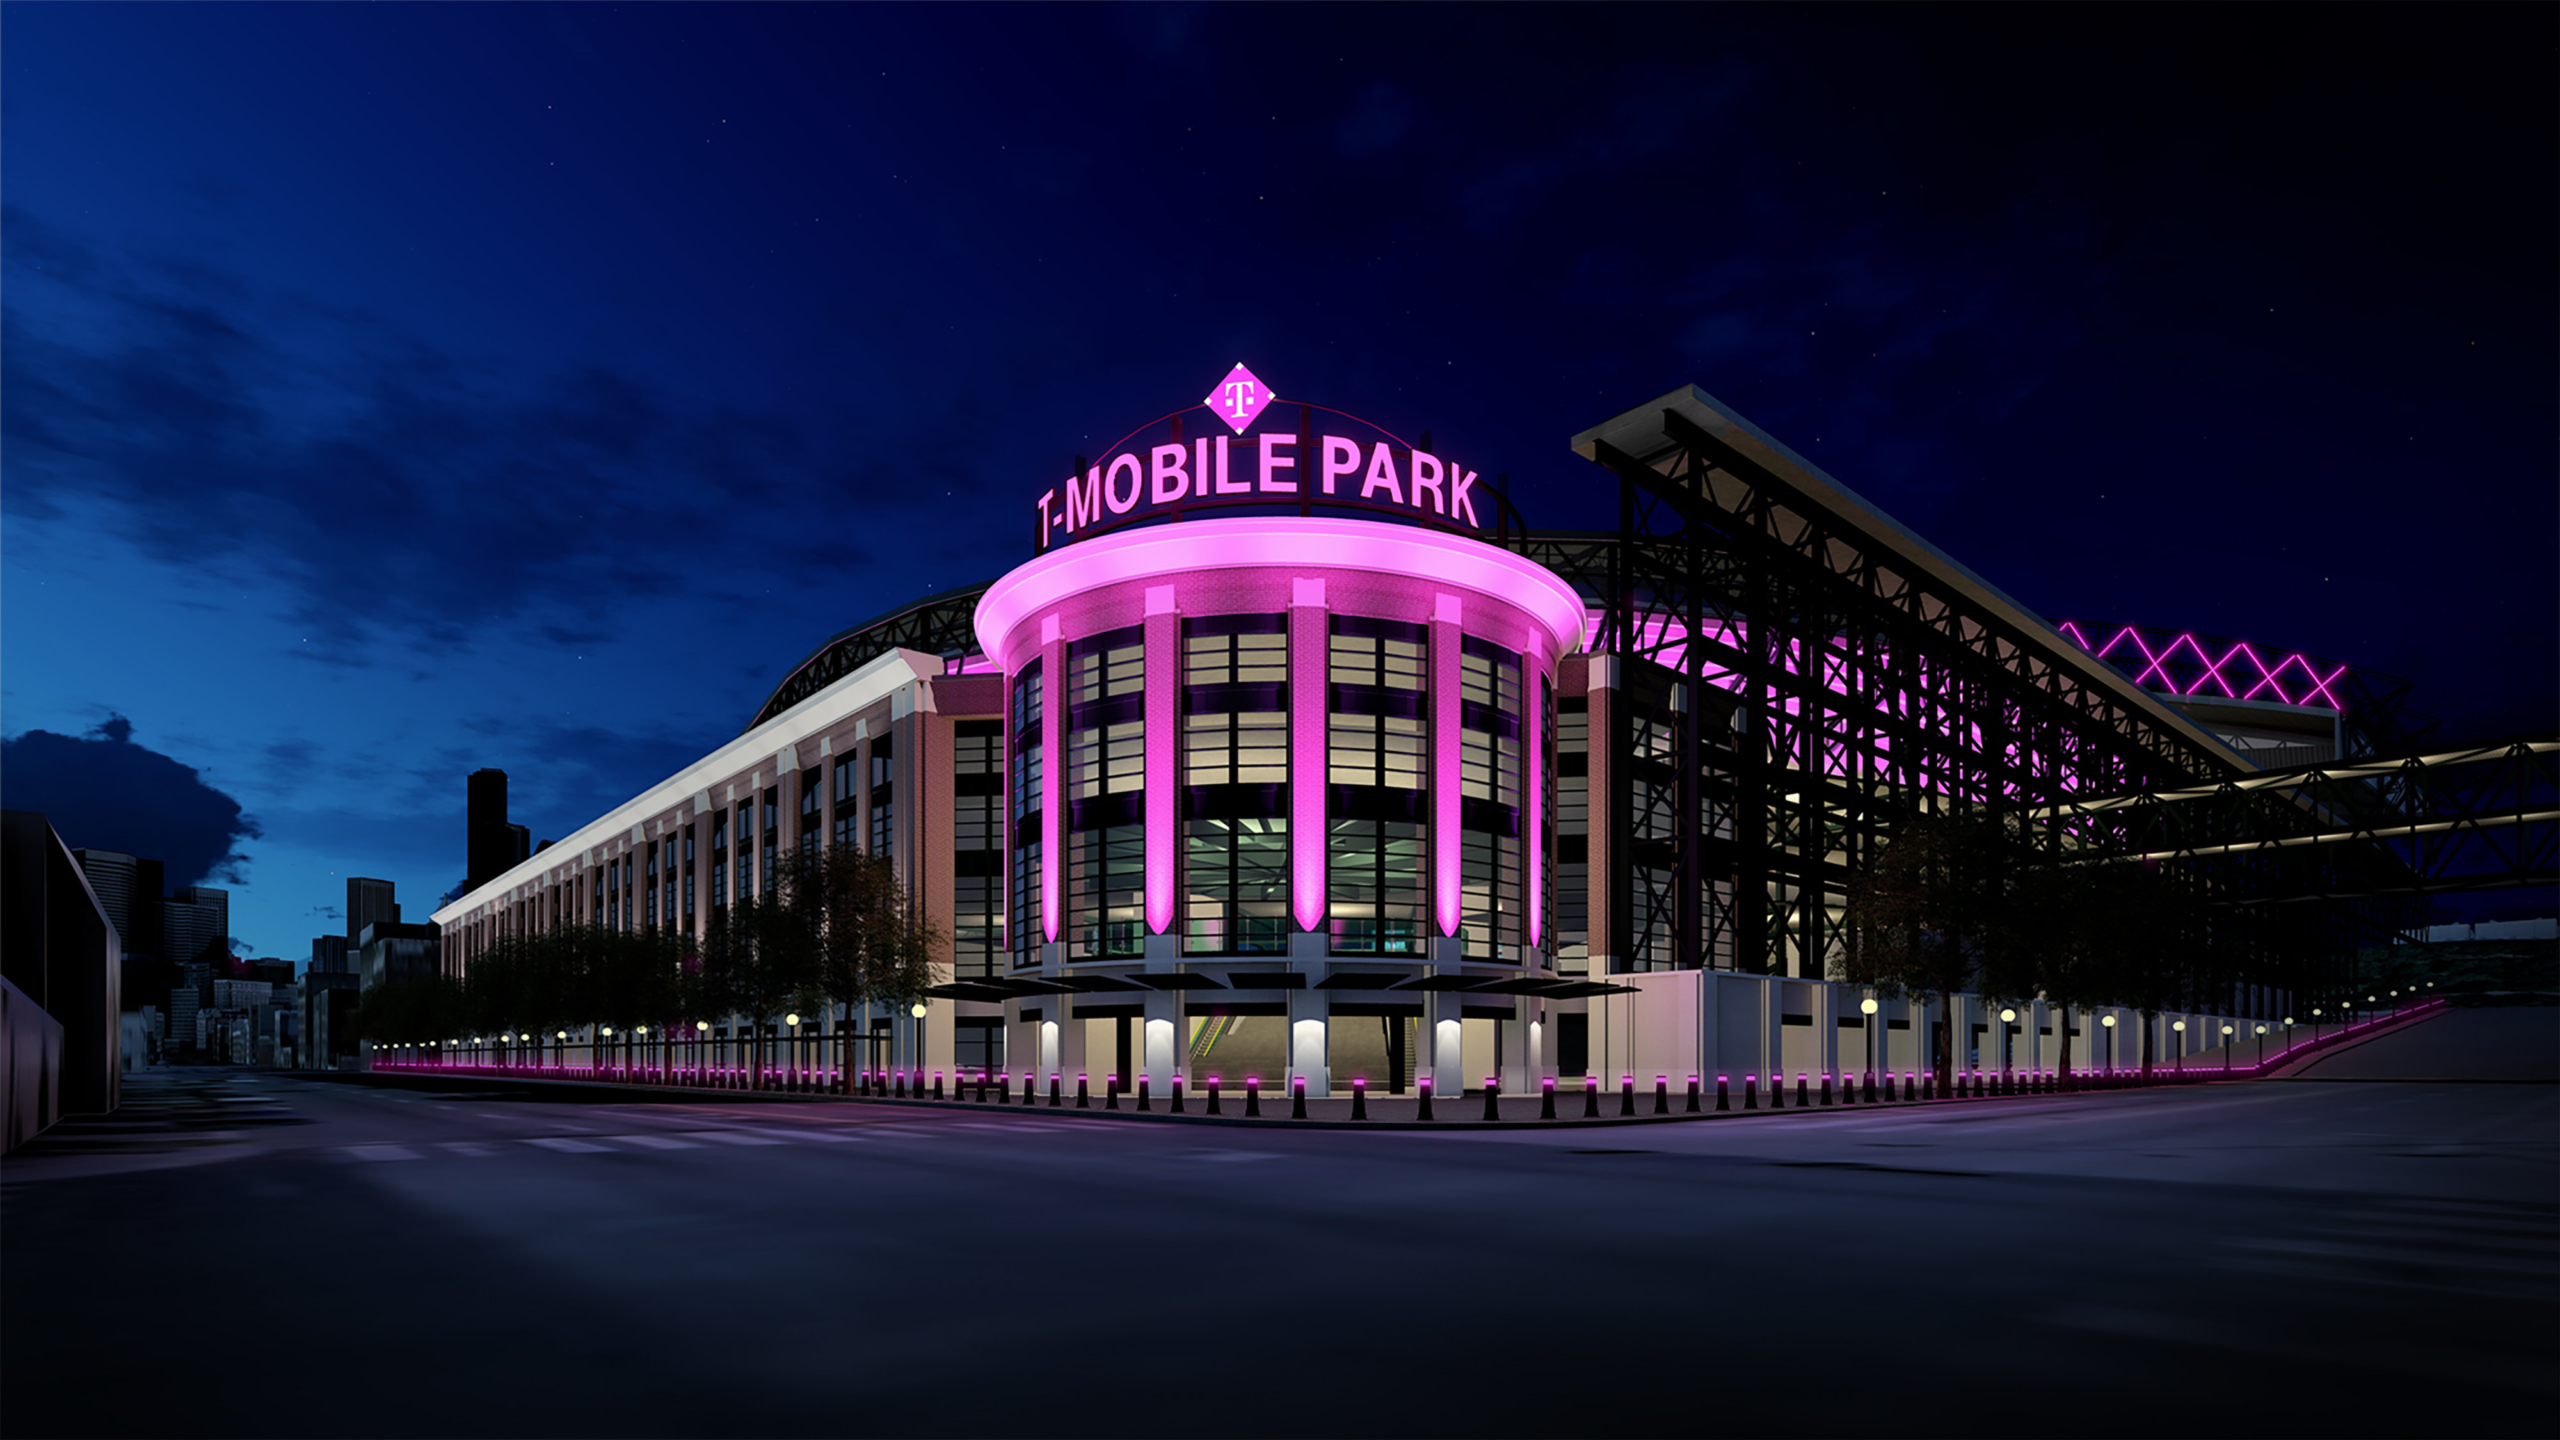 wp image 2649 scaled - Estadio de los Seattle Mariners ahora se llamará T-Mobile Park